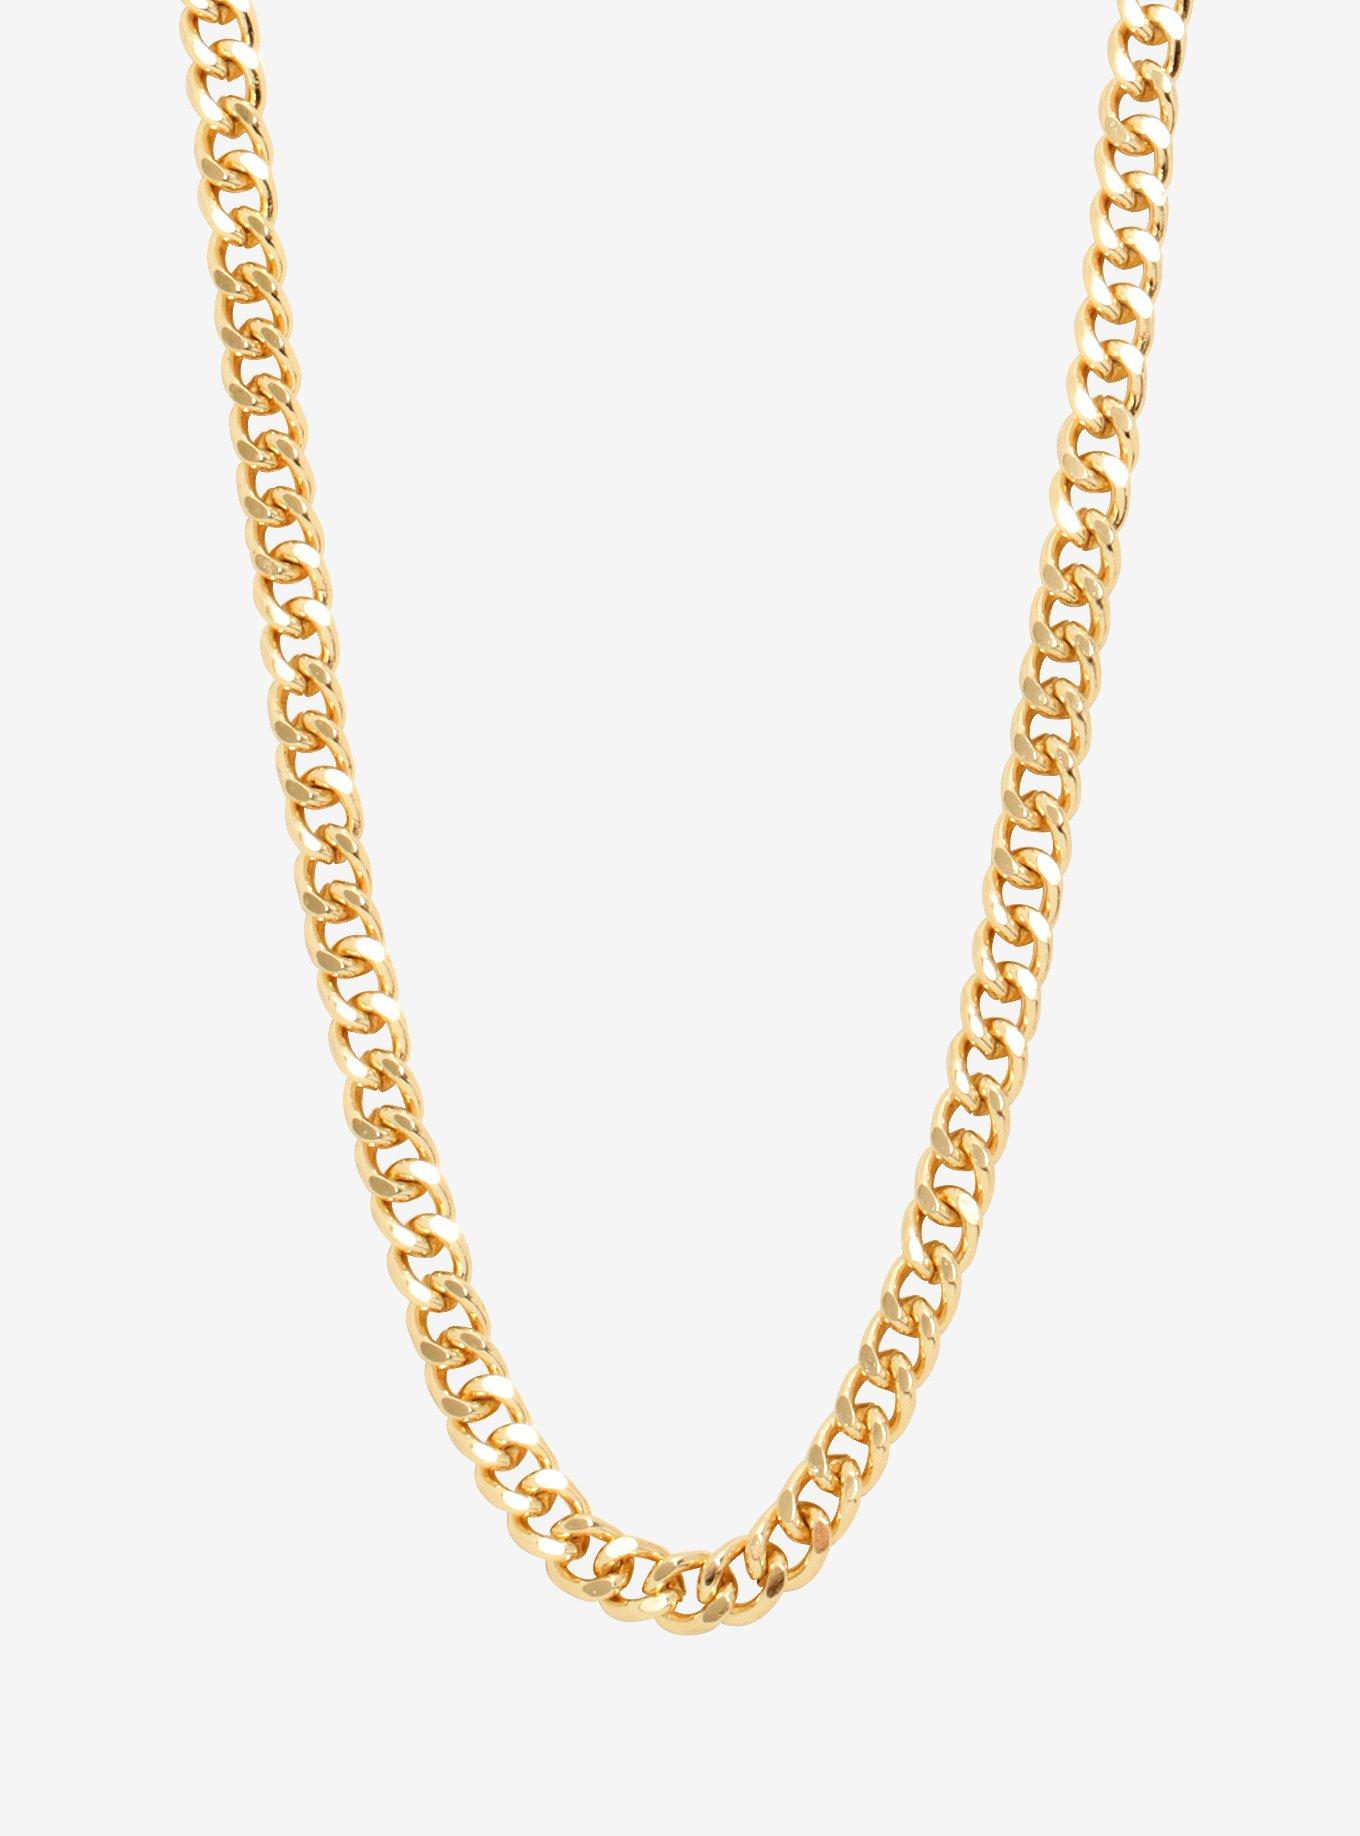 Gold Men's Chain Necklace, , hi-res